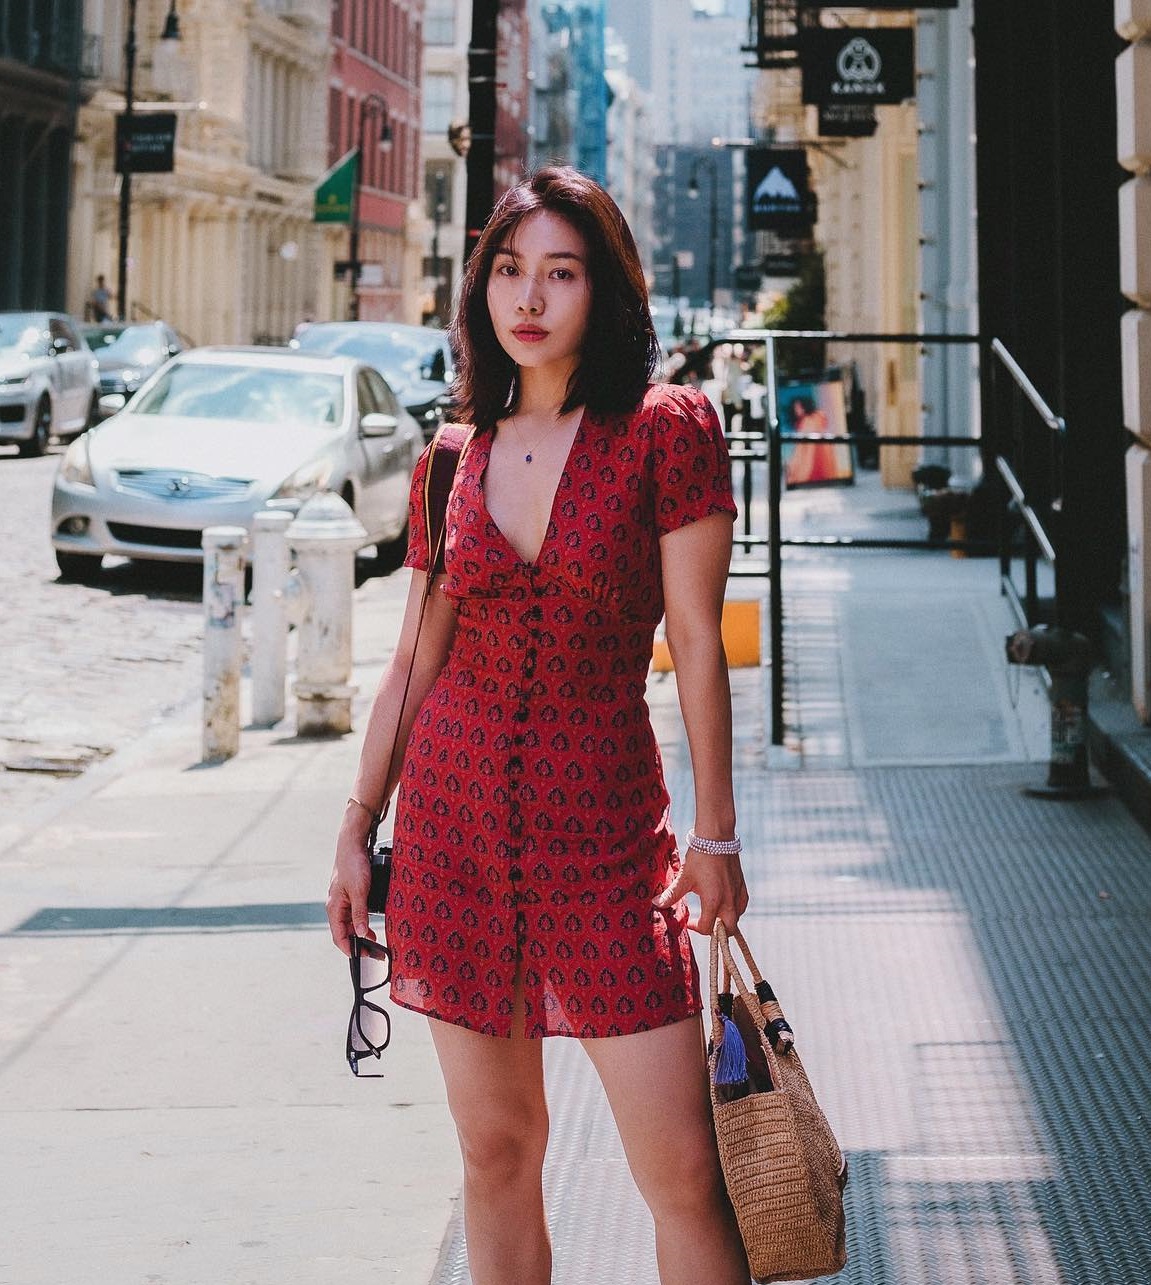 Bạn thân của Song Hye Kyo: Cực trẻ trung ở tuổi 38, diện đồ phảng phất phong cách thời trang Pháp - Ảnh 11.